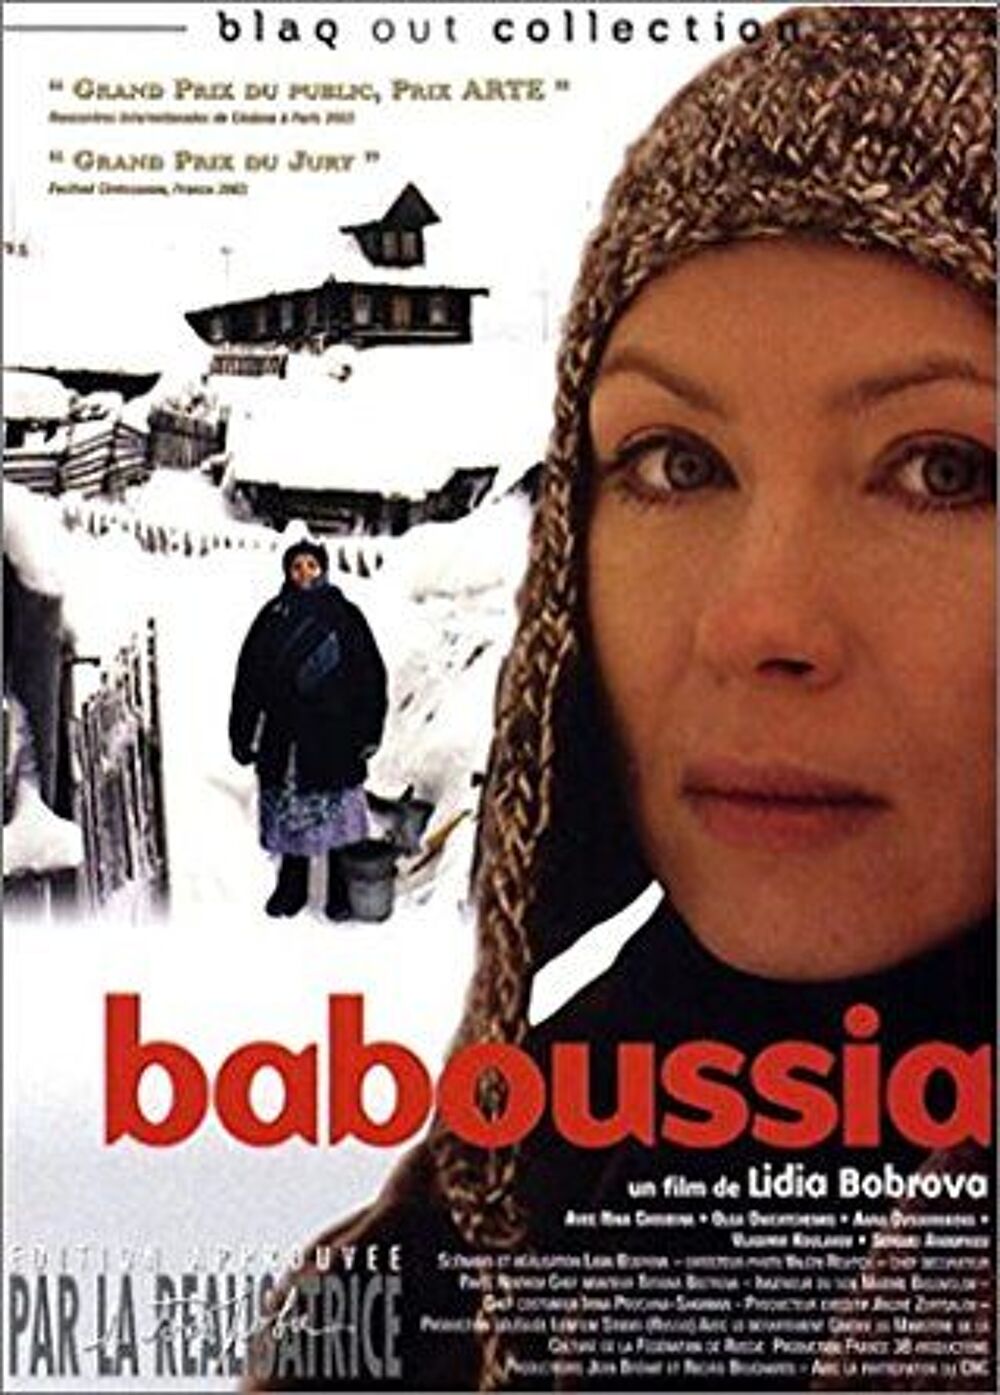 BABOUSSIA - Excellent film russe de Lidia Bobrova - 2004 DVD et blu-ray